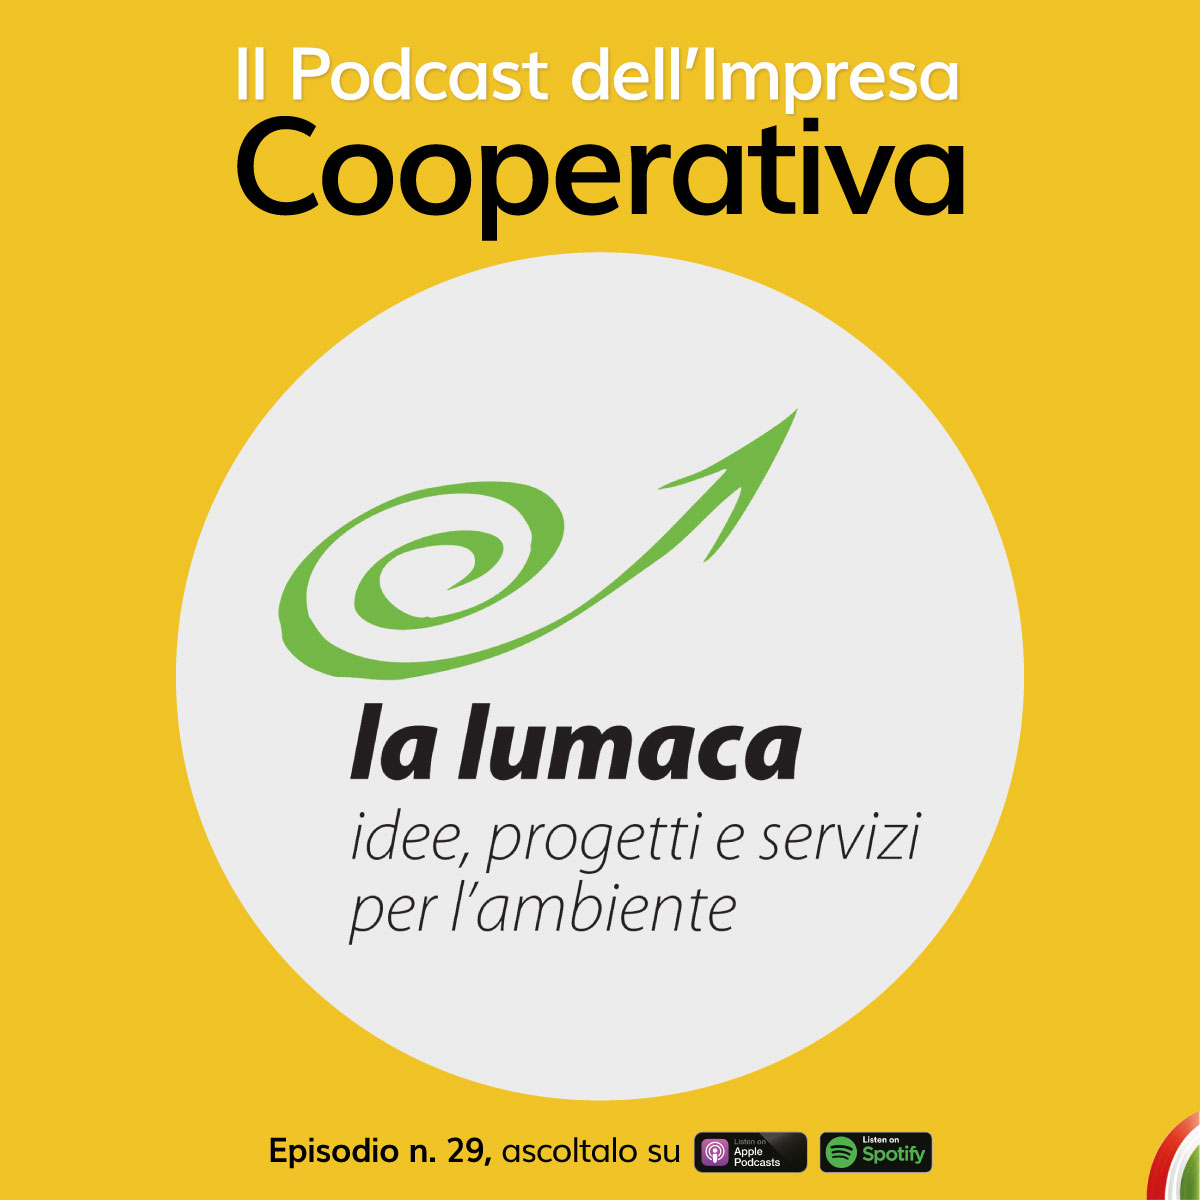 Cooperativa sociale La Lumaca: online un nuovo episodio di Il Podcast dell’Impresa Cooperativa